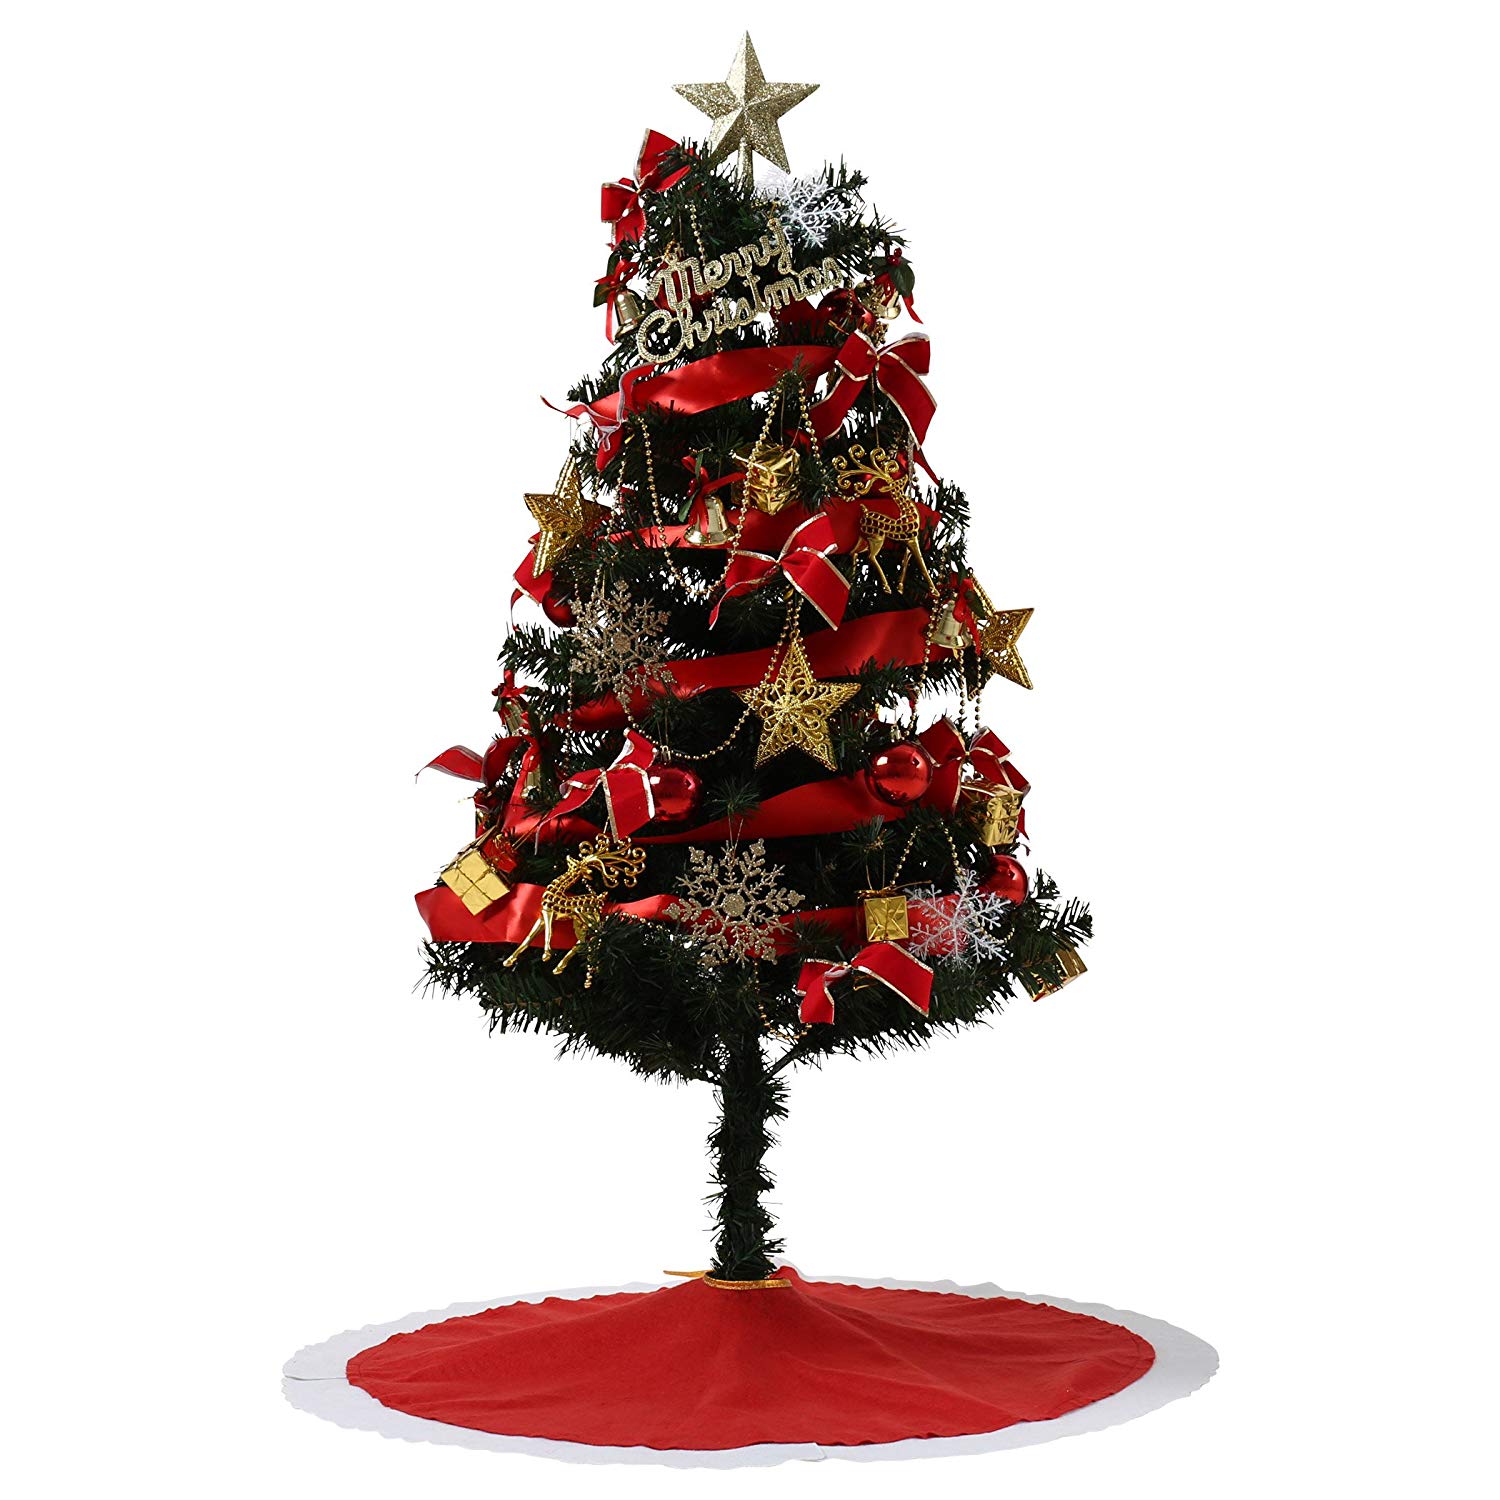 おしゃれでおすすめのクリスマスツリー人気ランキング 選び方 飾り方も モノナビ おすすめの家具 家電のランキング